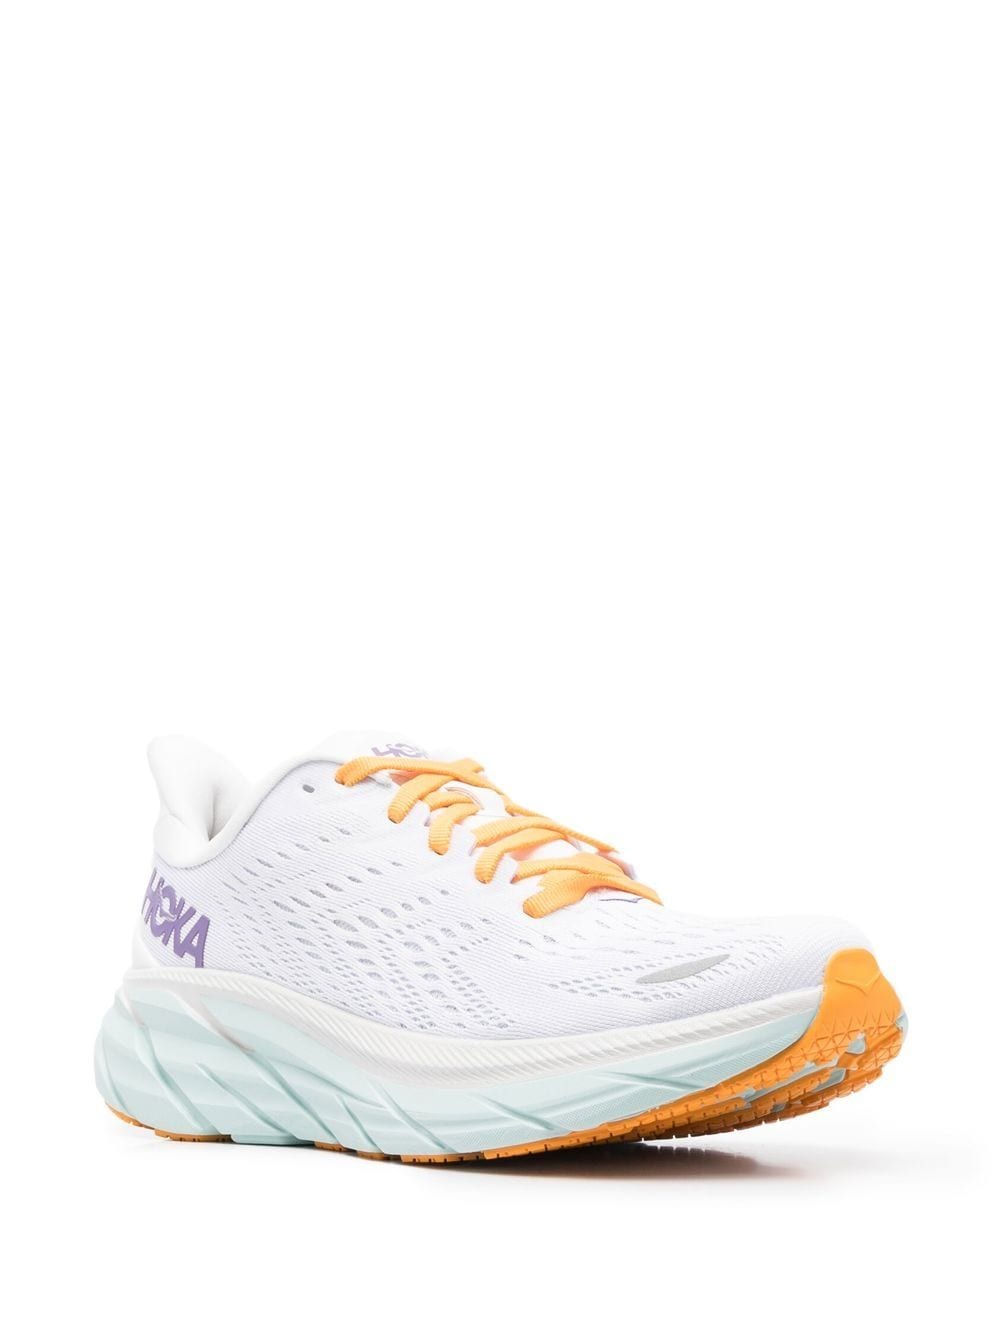 Sneaker running modello Clifton 8 colore bianco/lilla